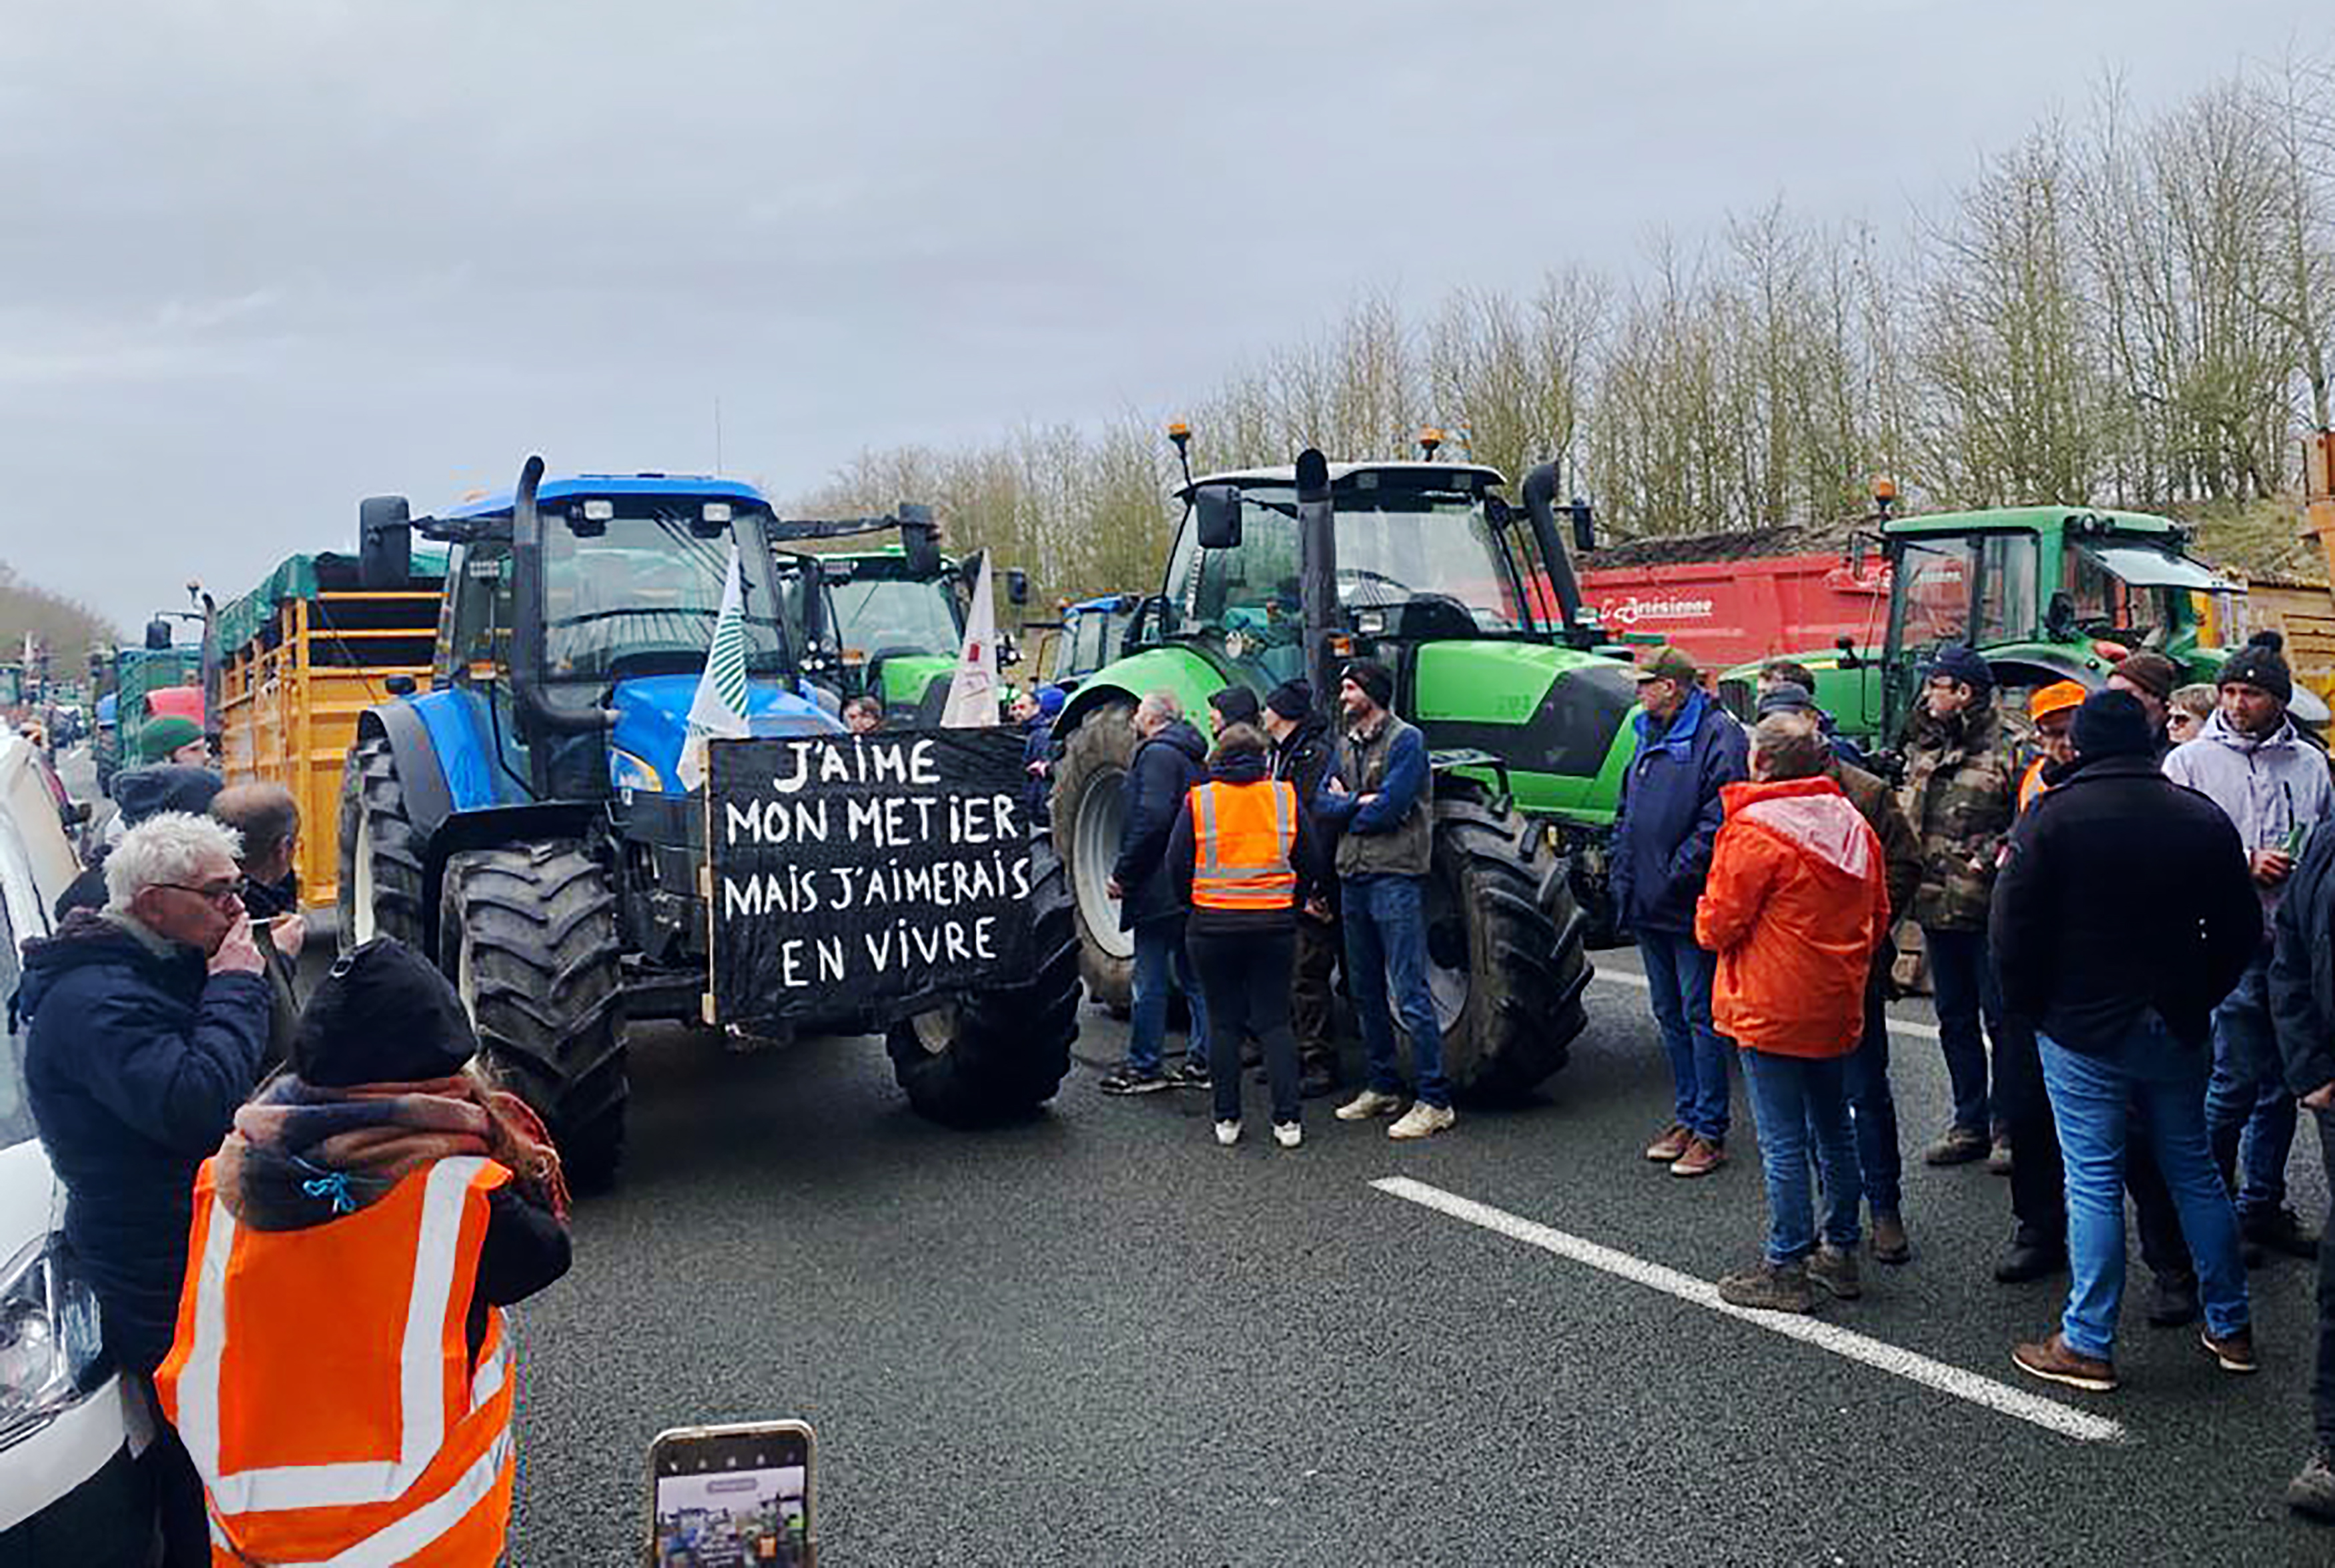 La mobilisation des agriculteurs se poursuit ce mercredi dans toute la France avec un blocage qui doit se rapprocher de la capitale et de son périphérique. LP/Juliette Duclos